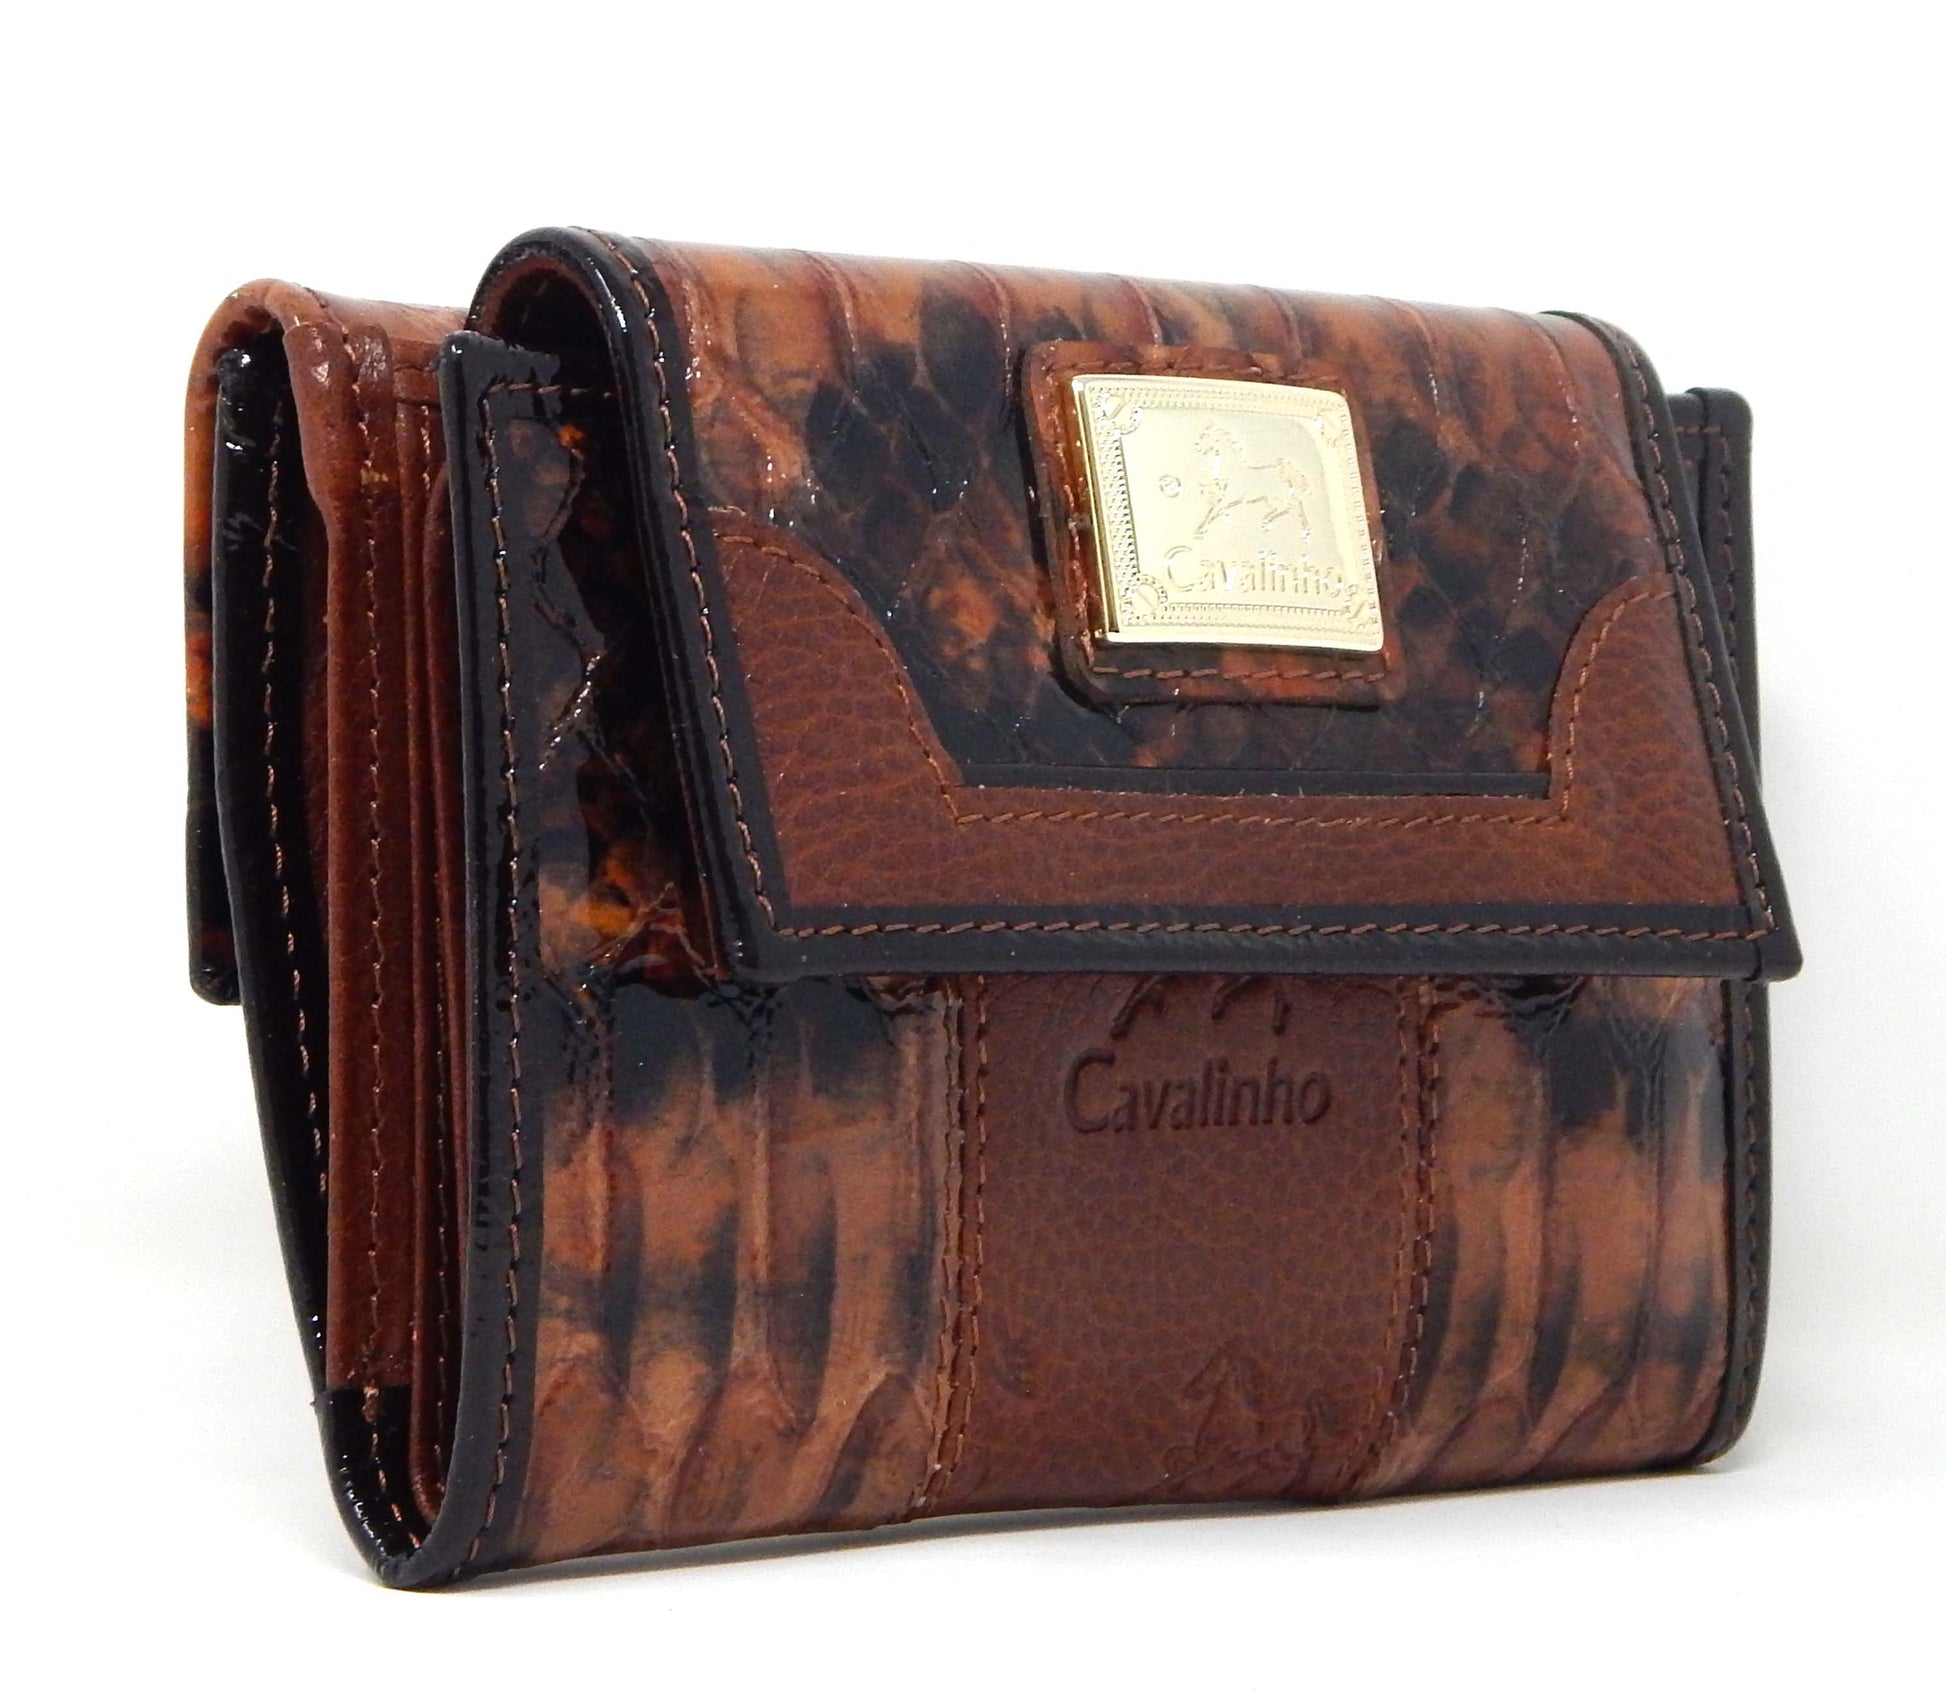 #color_ SaddleBrown | Cavalinho Honor Leather Wallet - SaddleBrown - 28190219.13.99_2